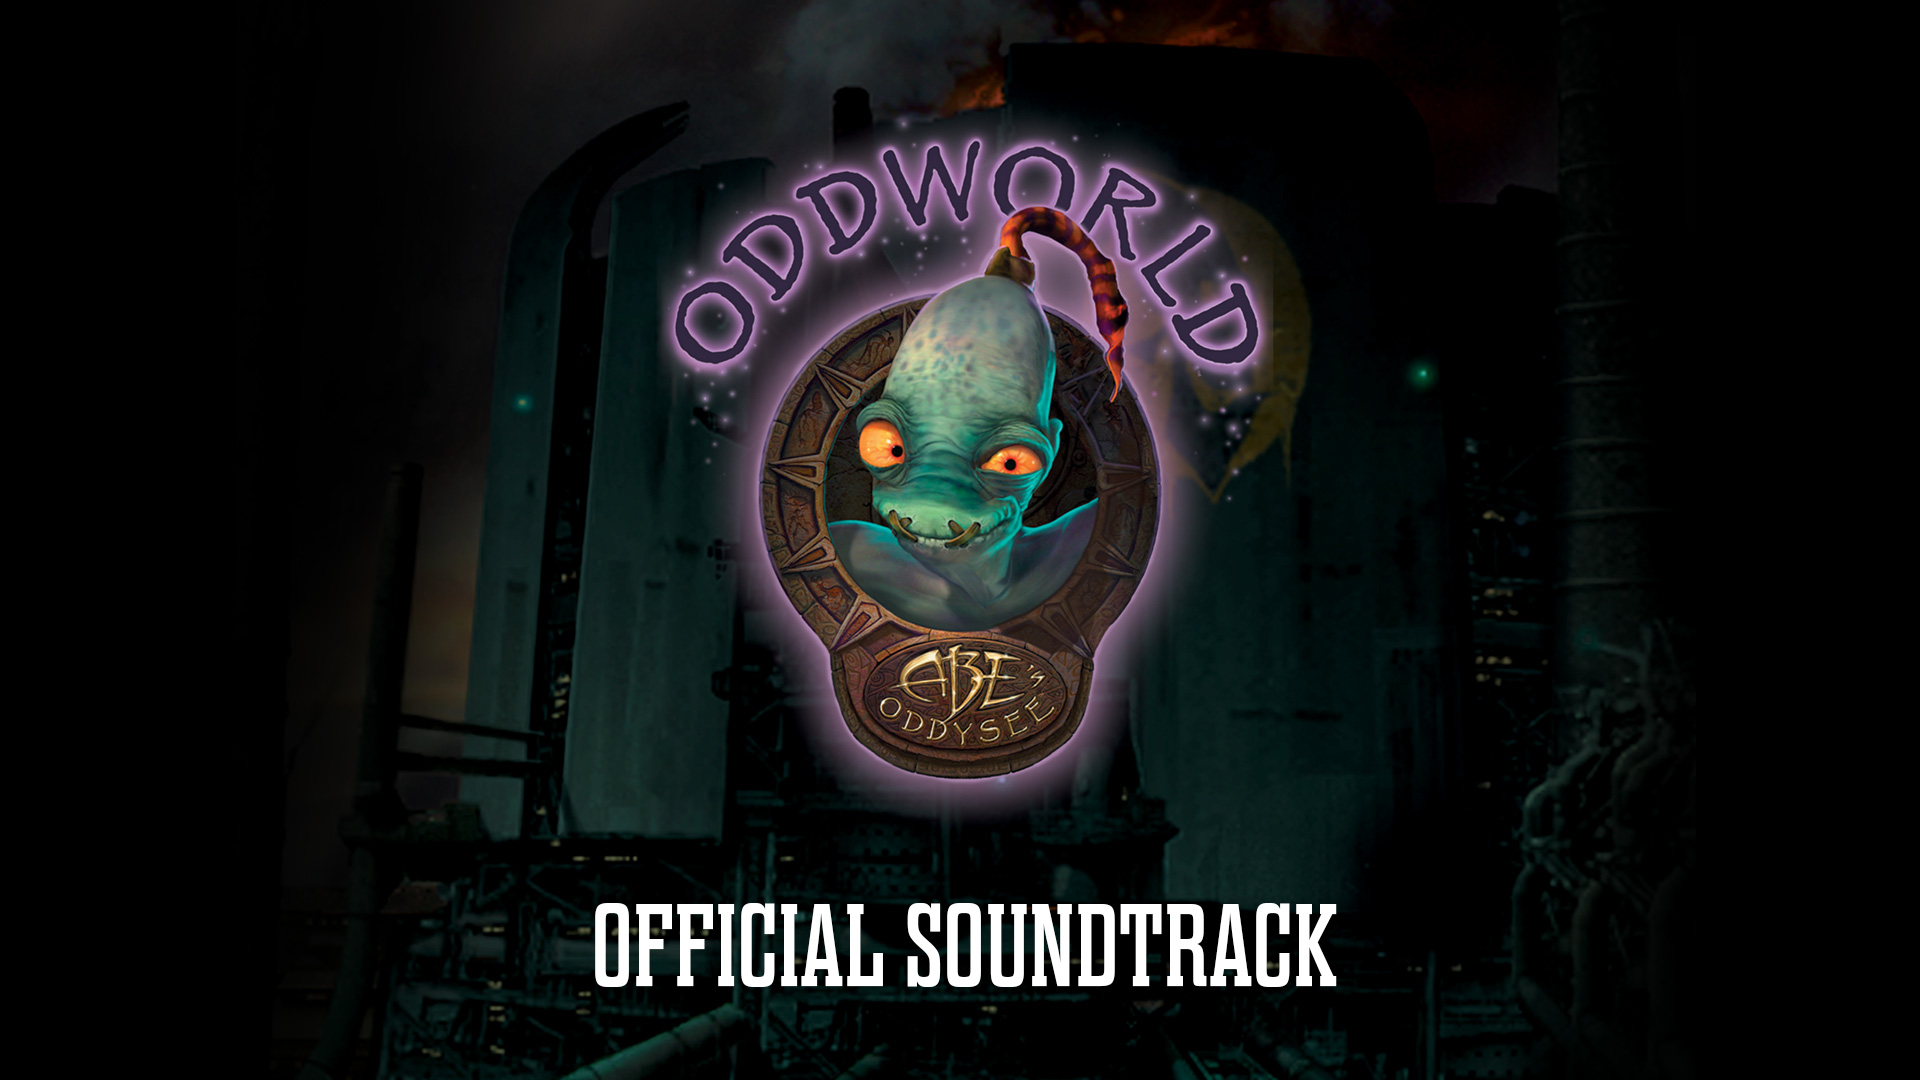 Oddworld new n tasty steam фото 57